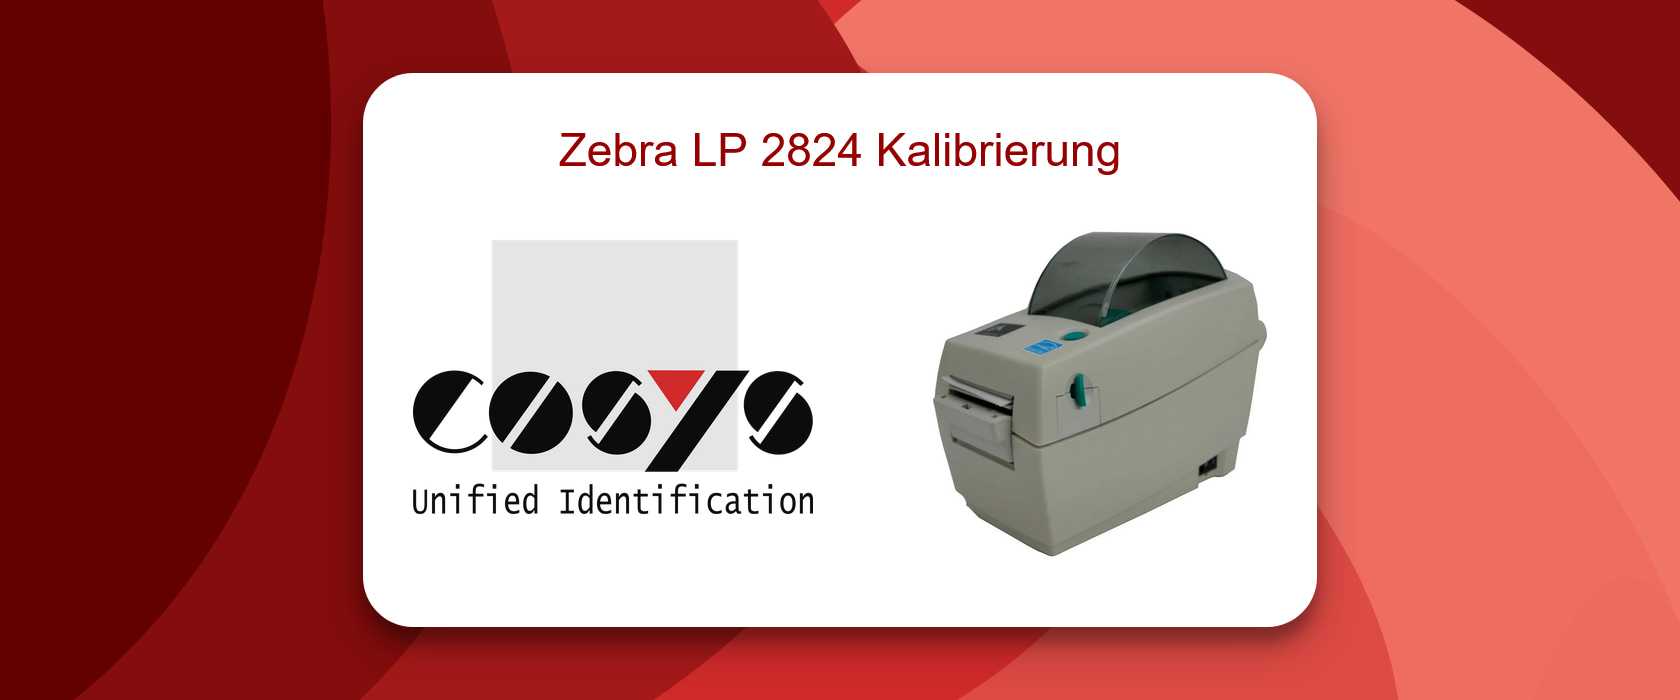 Zebra LP 2824 Kalibrierung